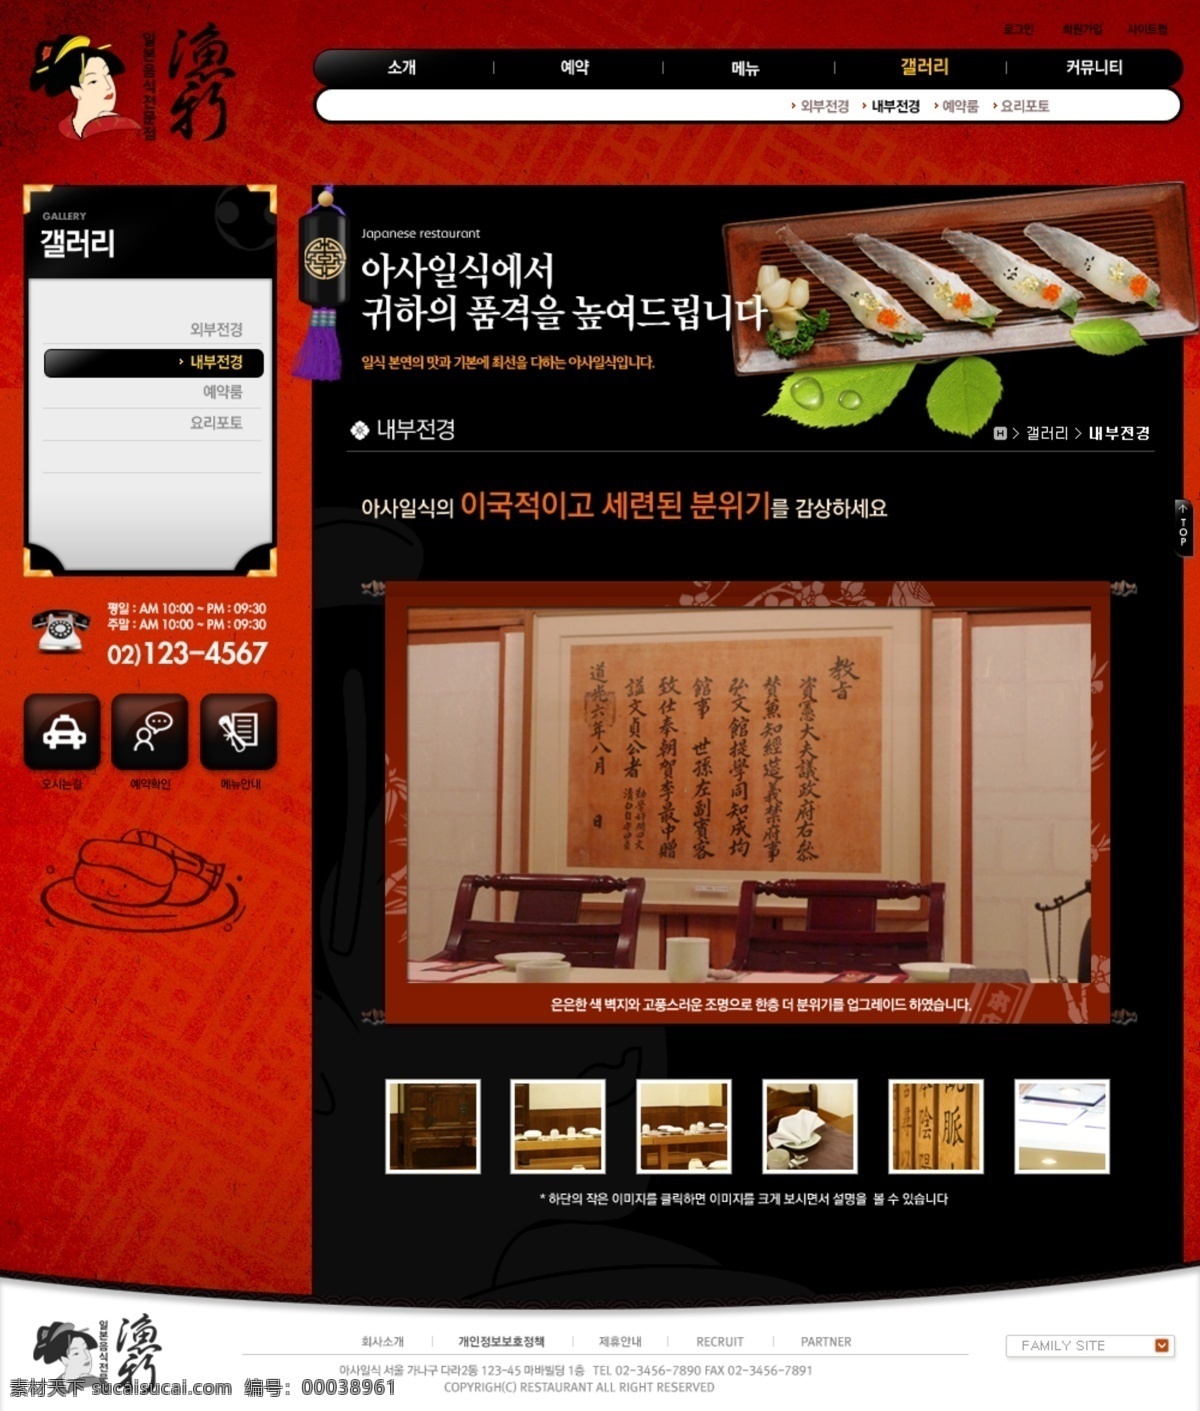 分层 ui设计 版式设计 菜品 餐厅 饭店 古典 韩国模板 日式 料理 网页设计 源文件 网页模板 网页界面 界面设计 网页版式 红色 日本 食物 美食 卷轴 黑色 韩文模板 web 网页素材 其他网页素材